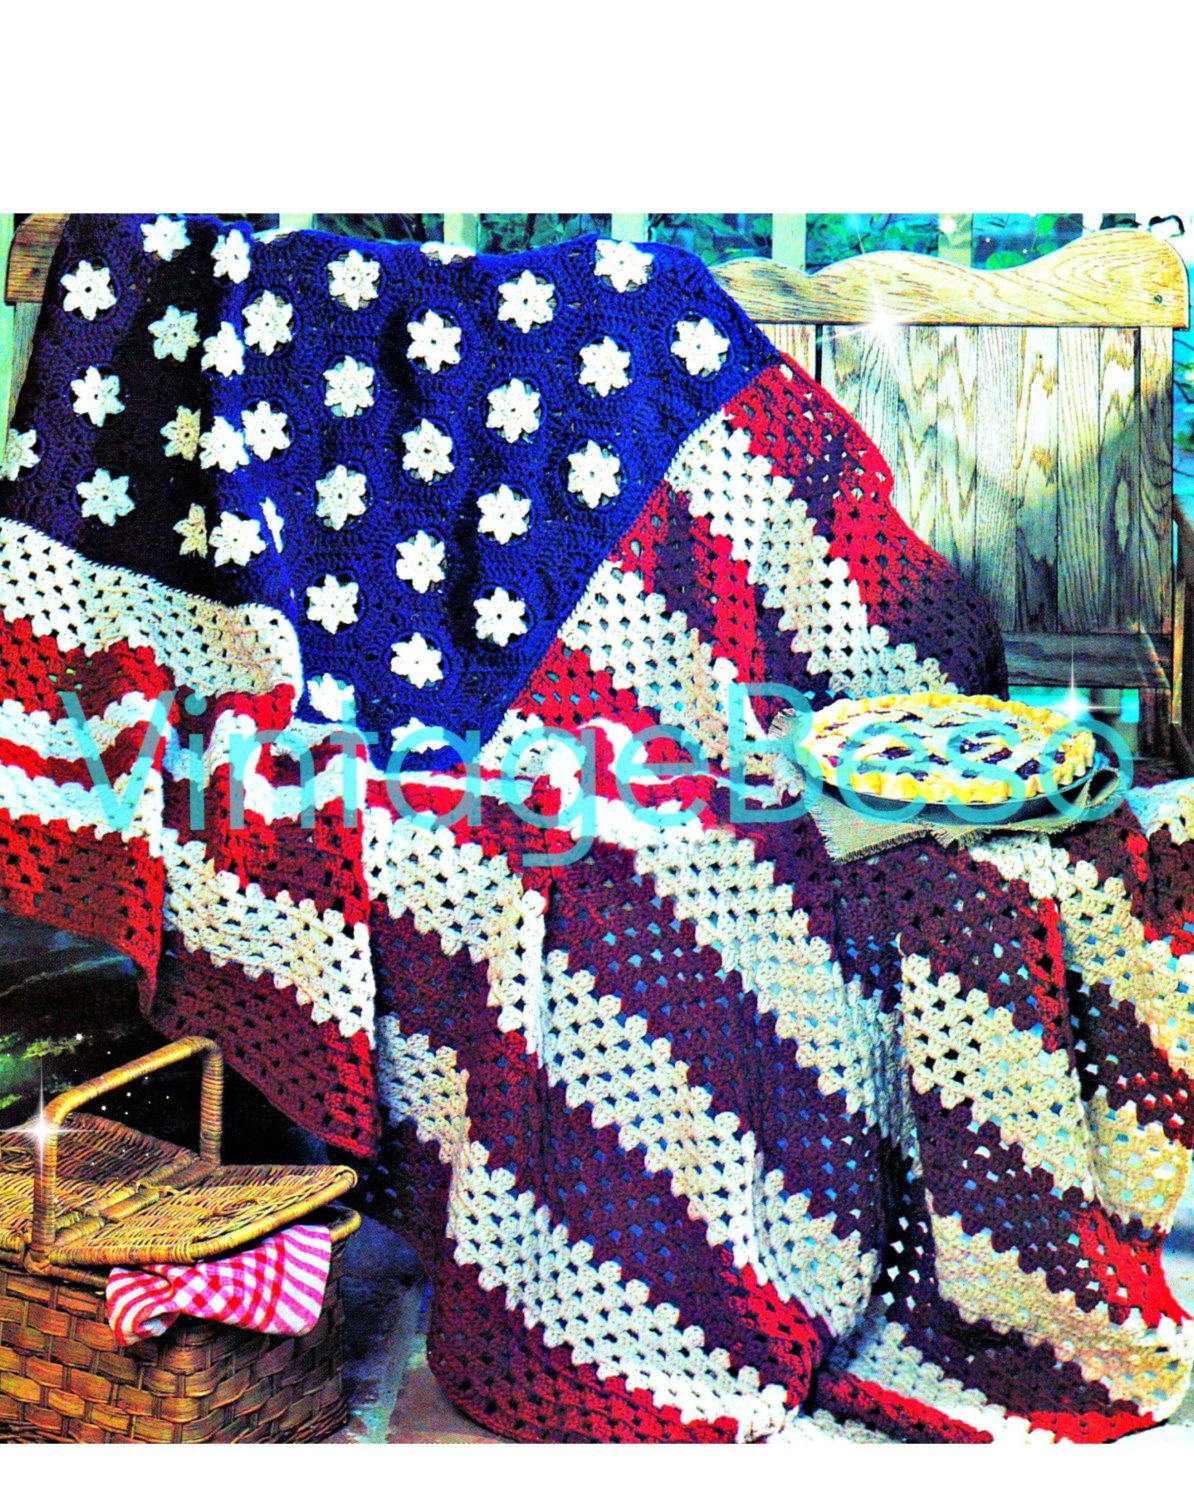 American Flag Crochet Pattern Easy Afghan Crochet Pattern American Flag Stars And Stripes